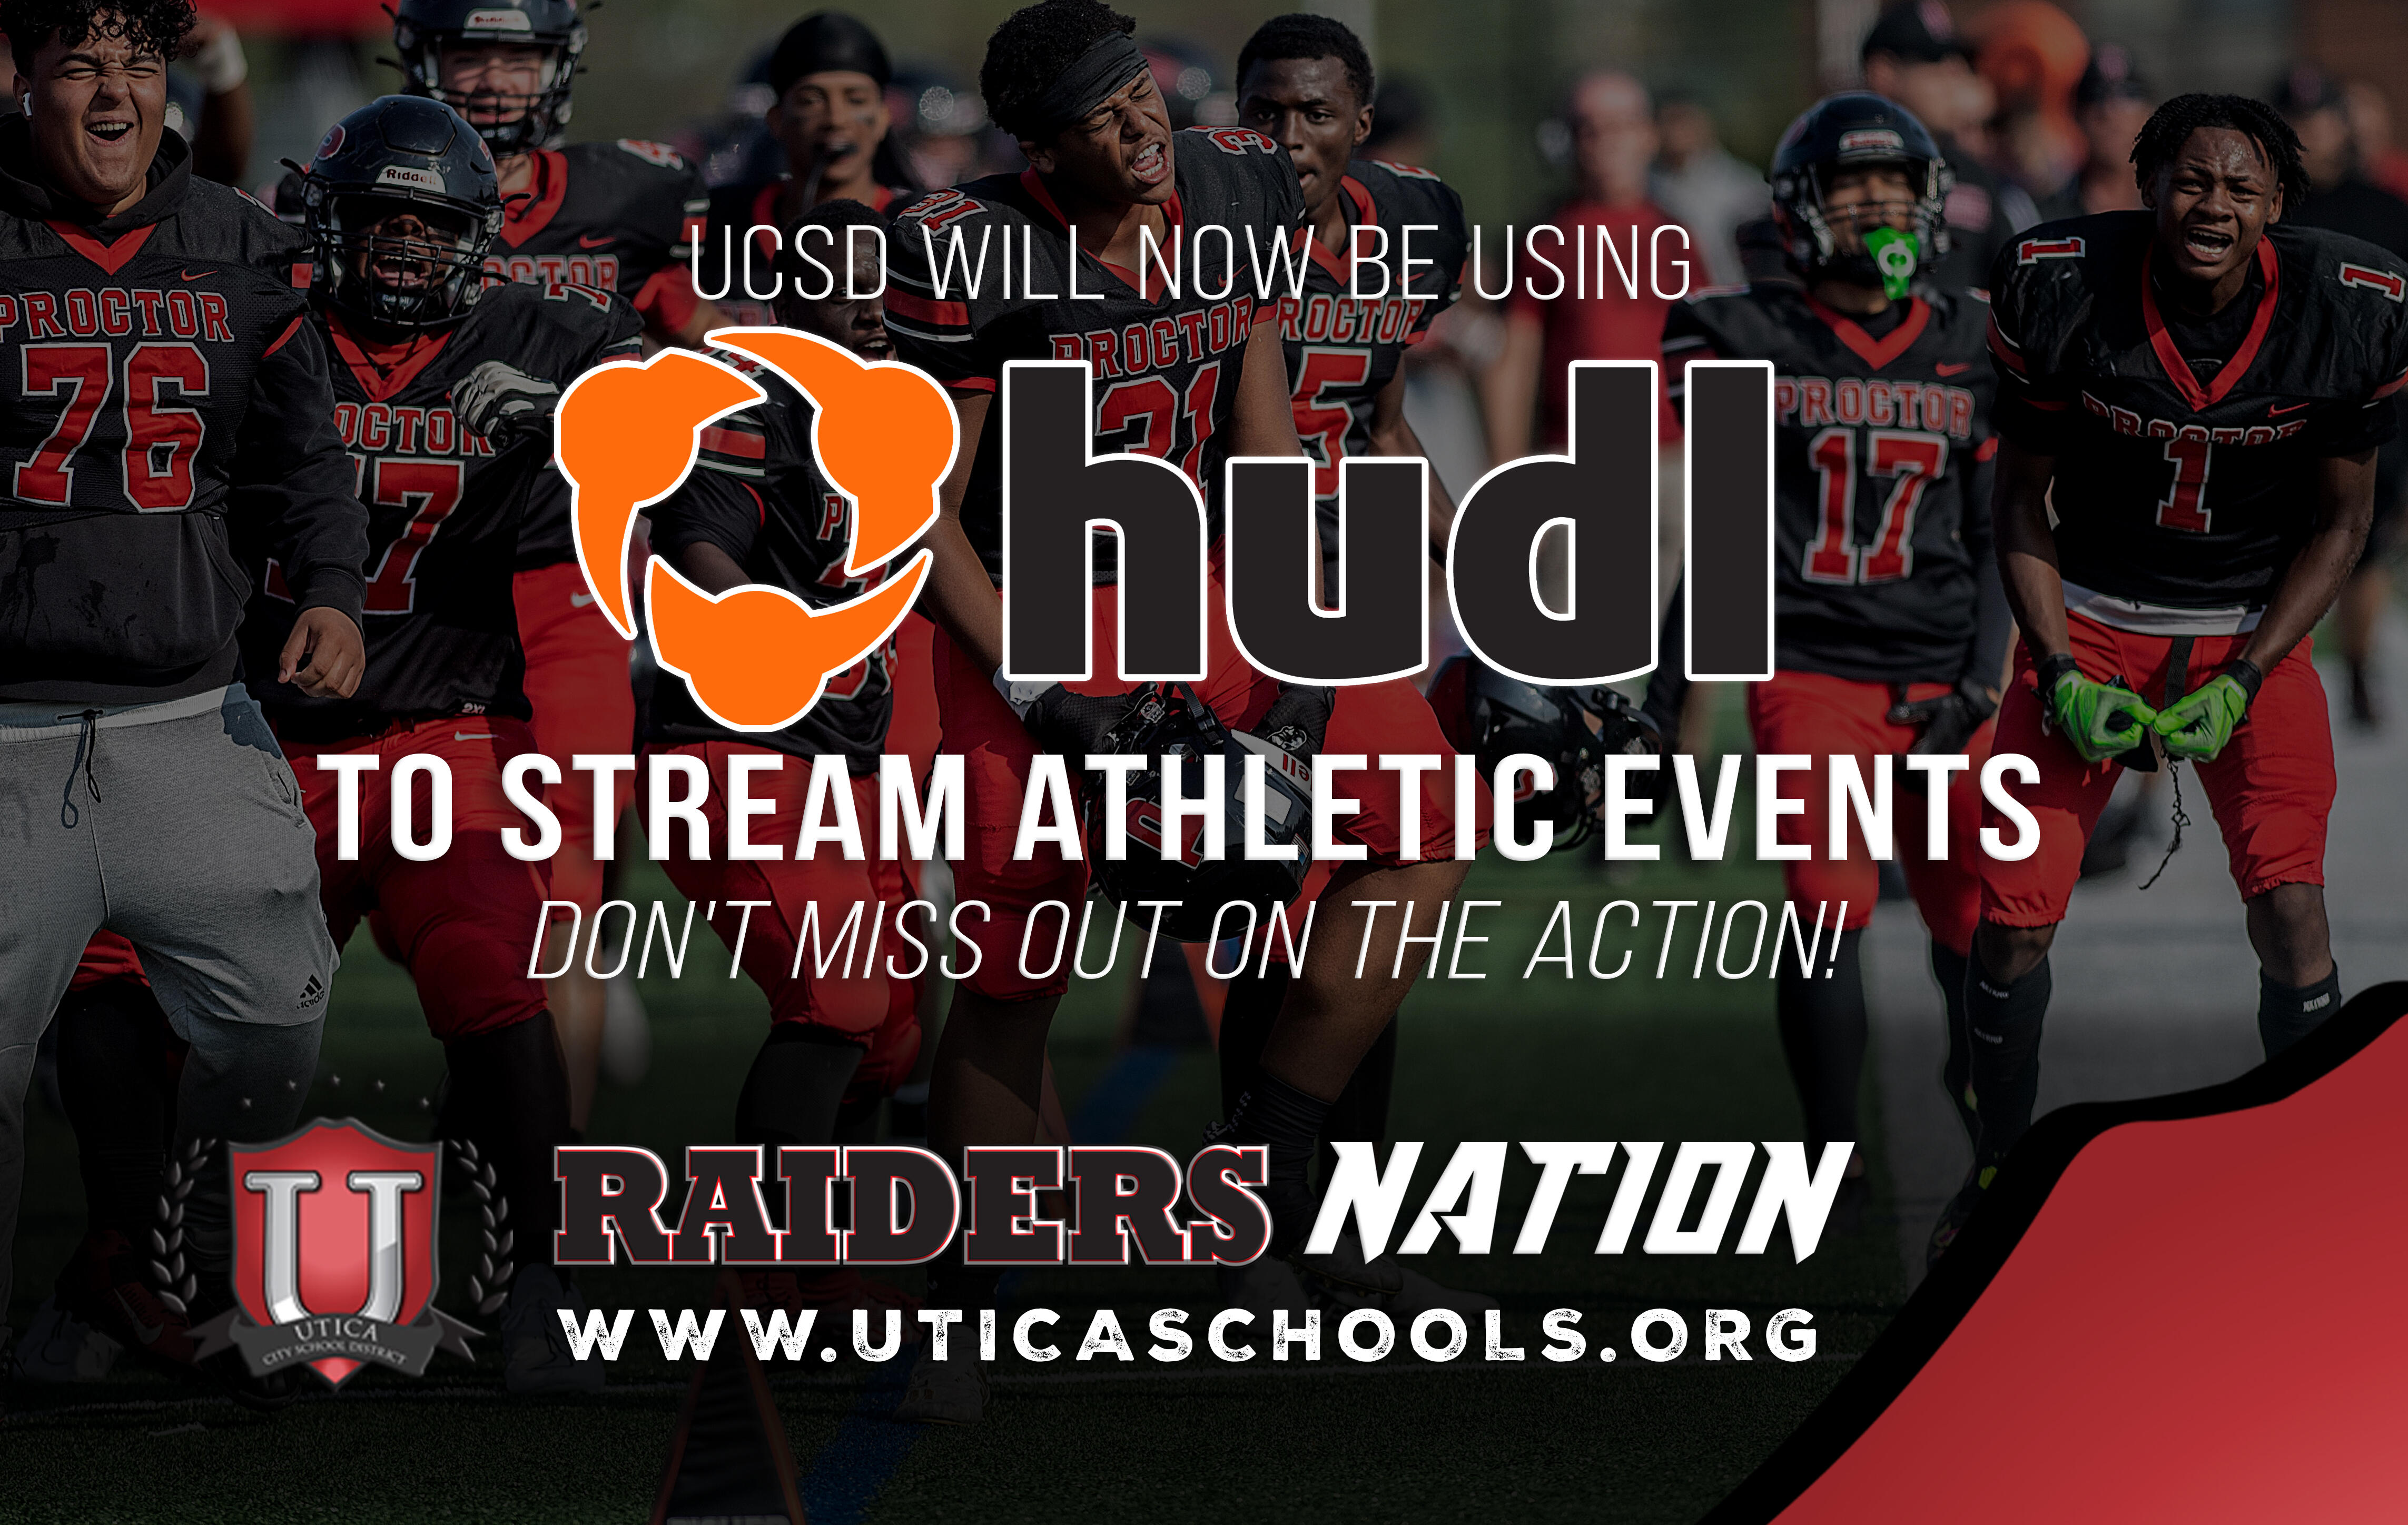 UCSD ayeuna bakal ngagunakeun HUDL TV pikeun ngalirkeun data acara atlit. Ulah sono kaluar dina aksi!